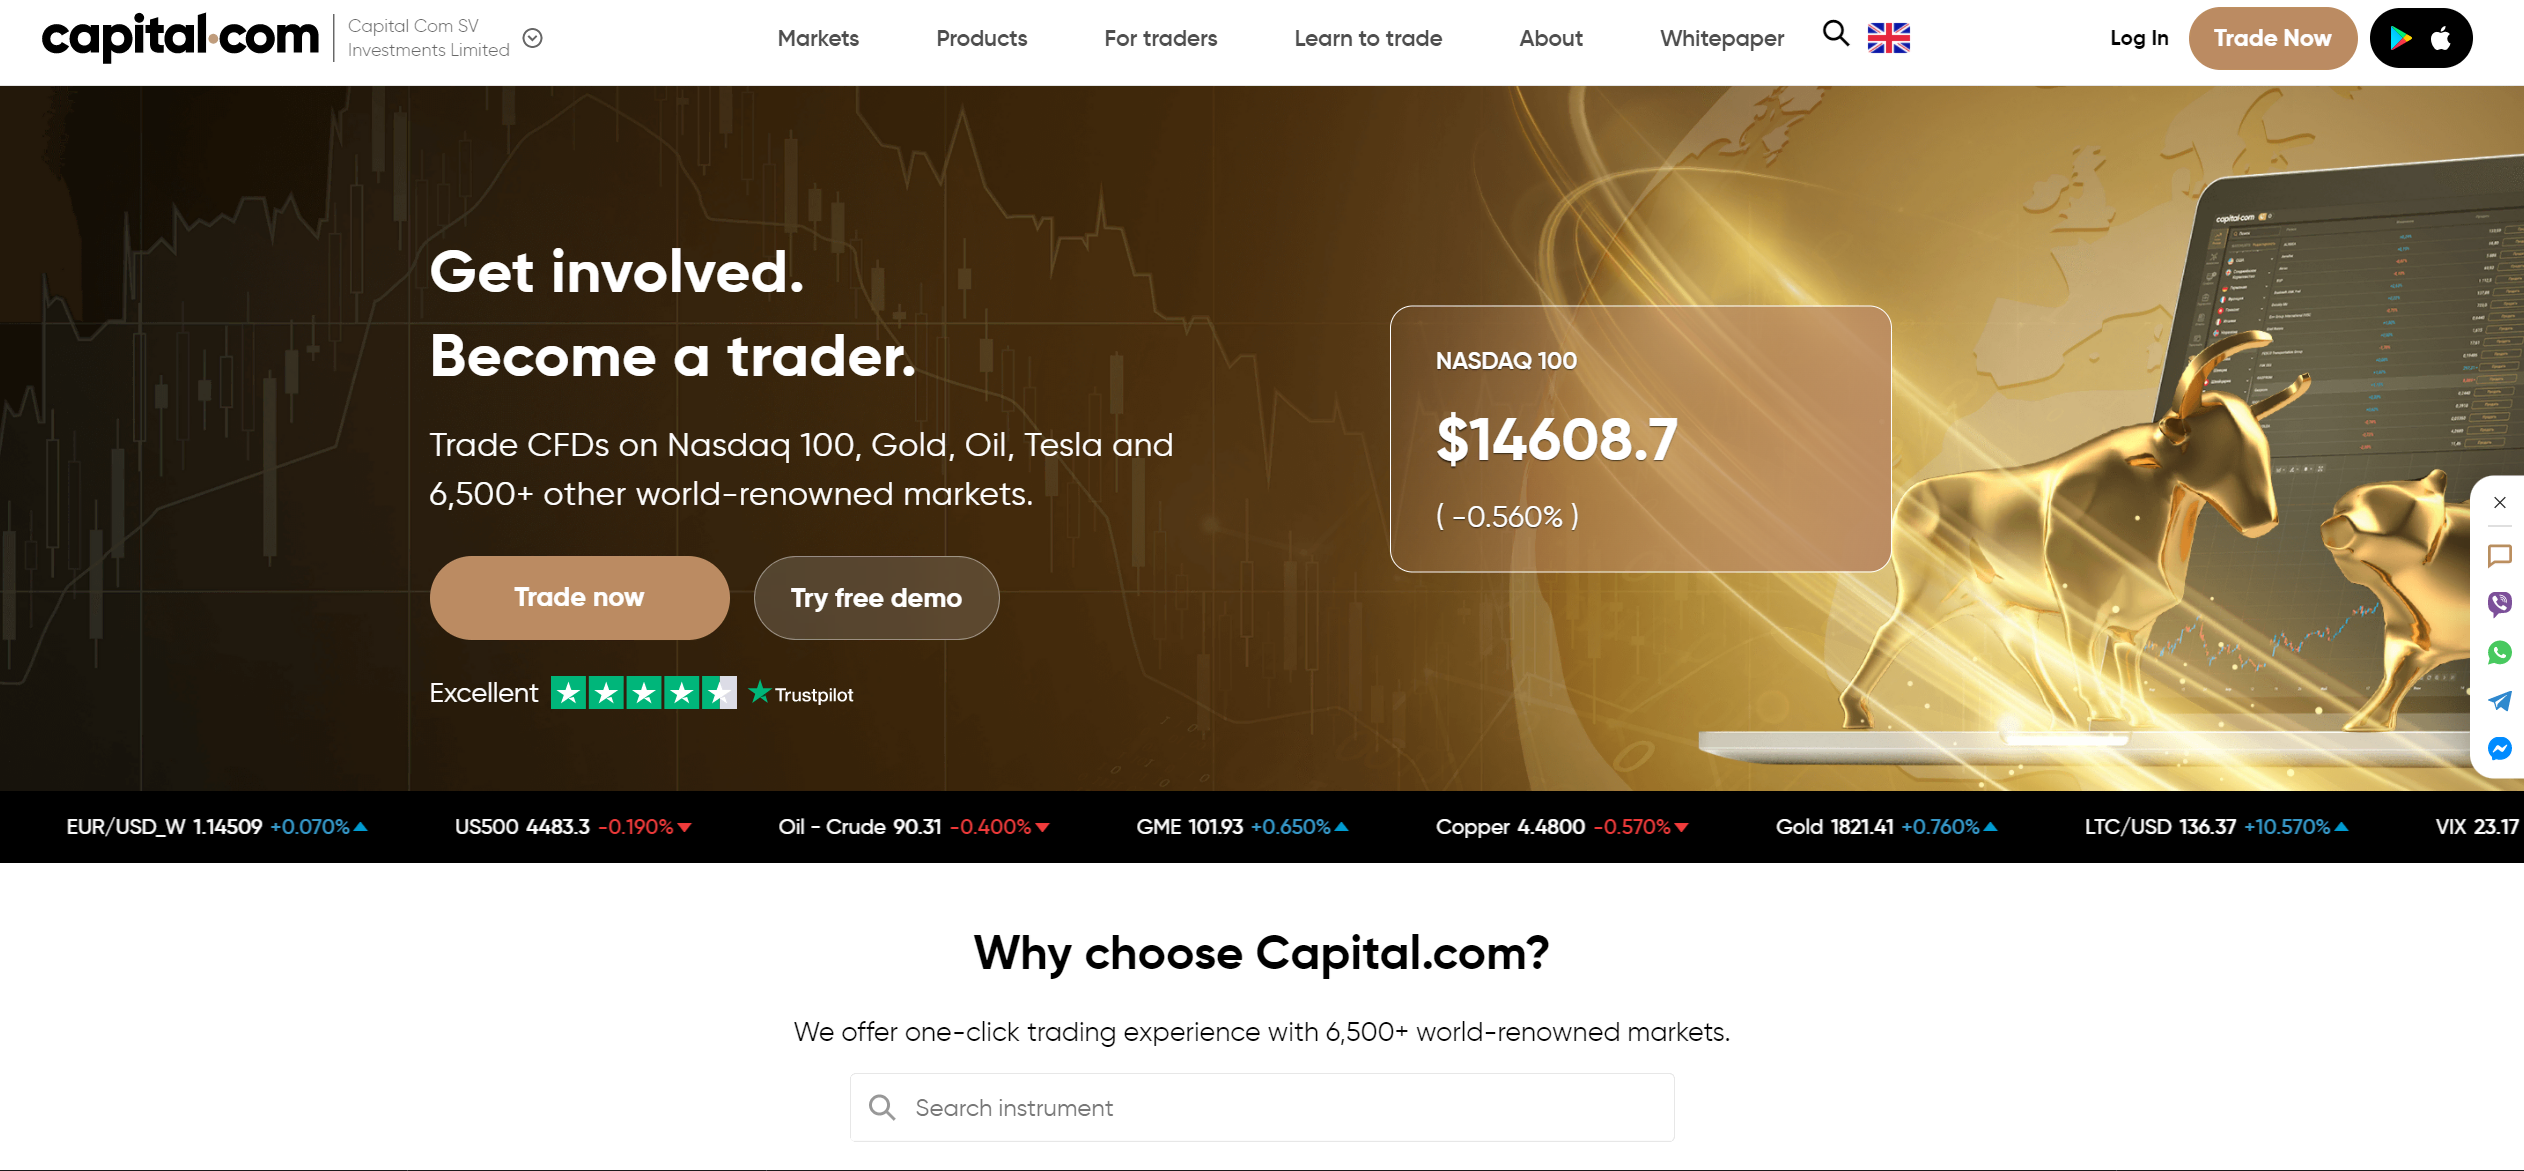 Sitio web oficial de Capital.com